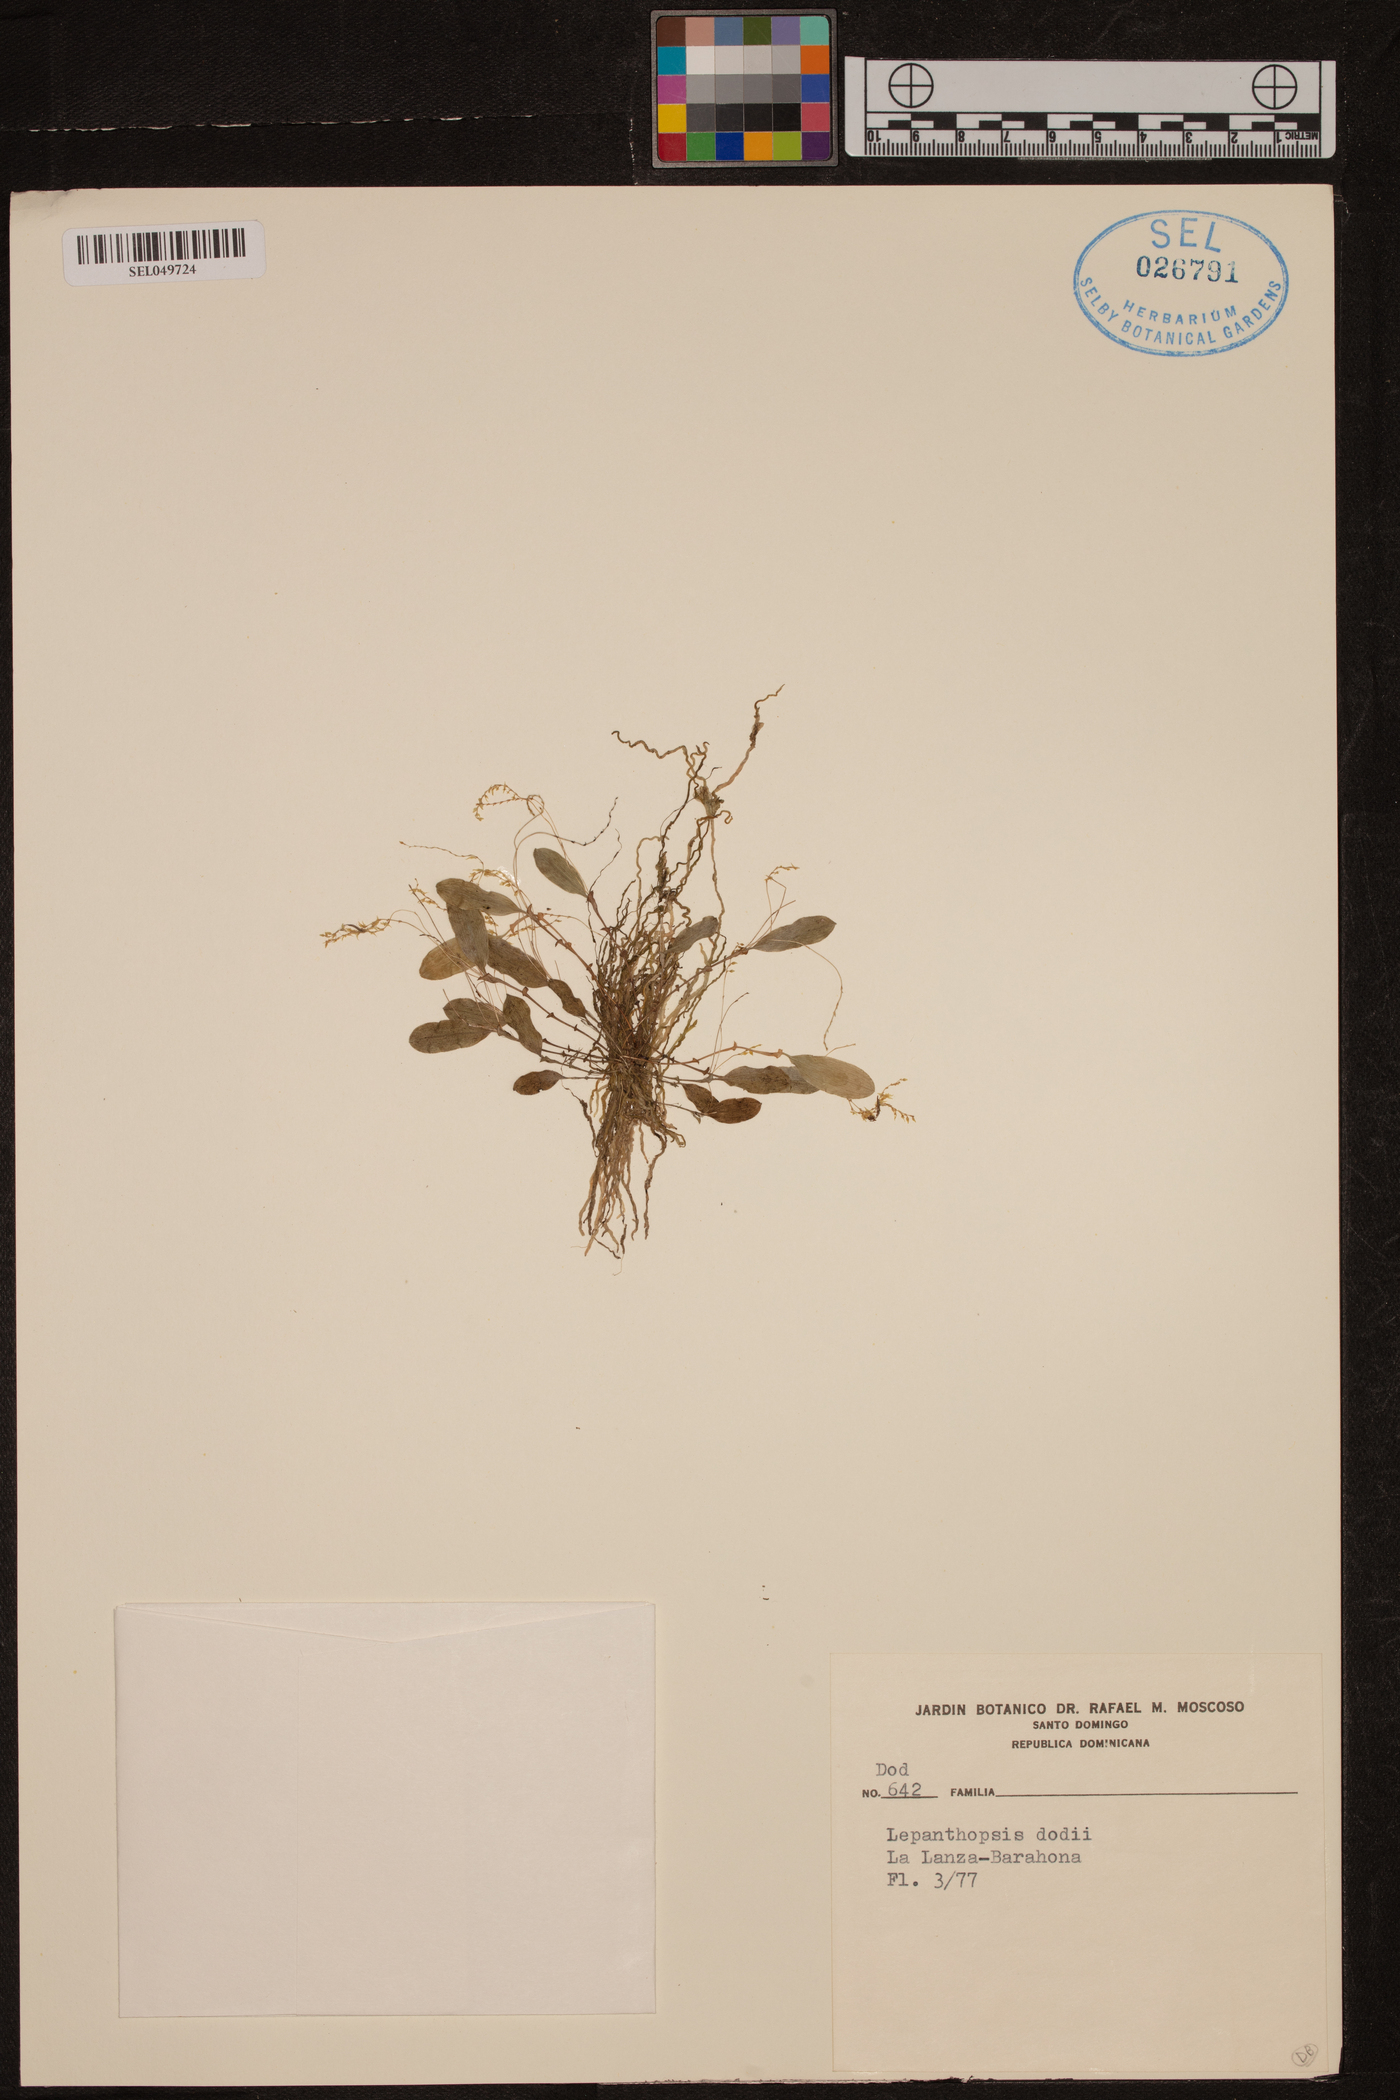 Lepanthopsis dodii image